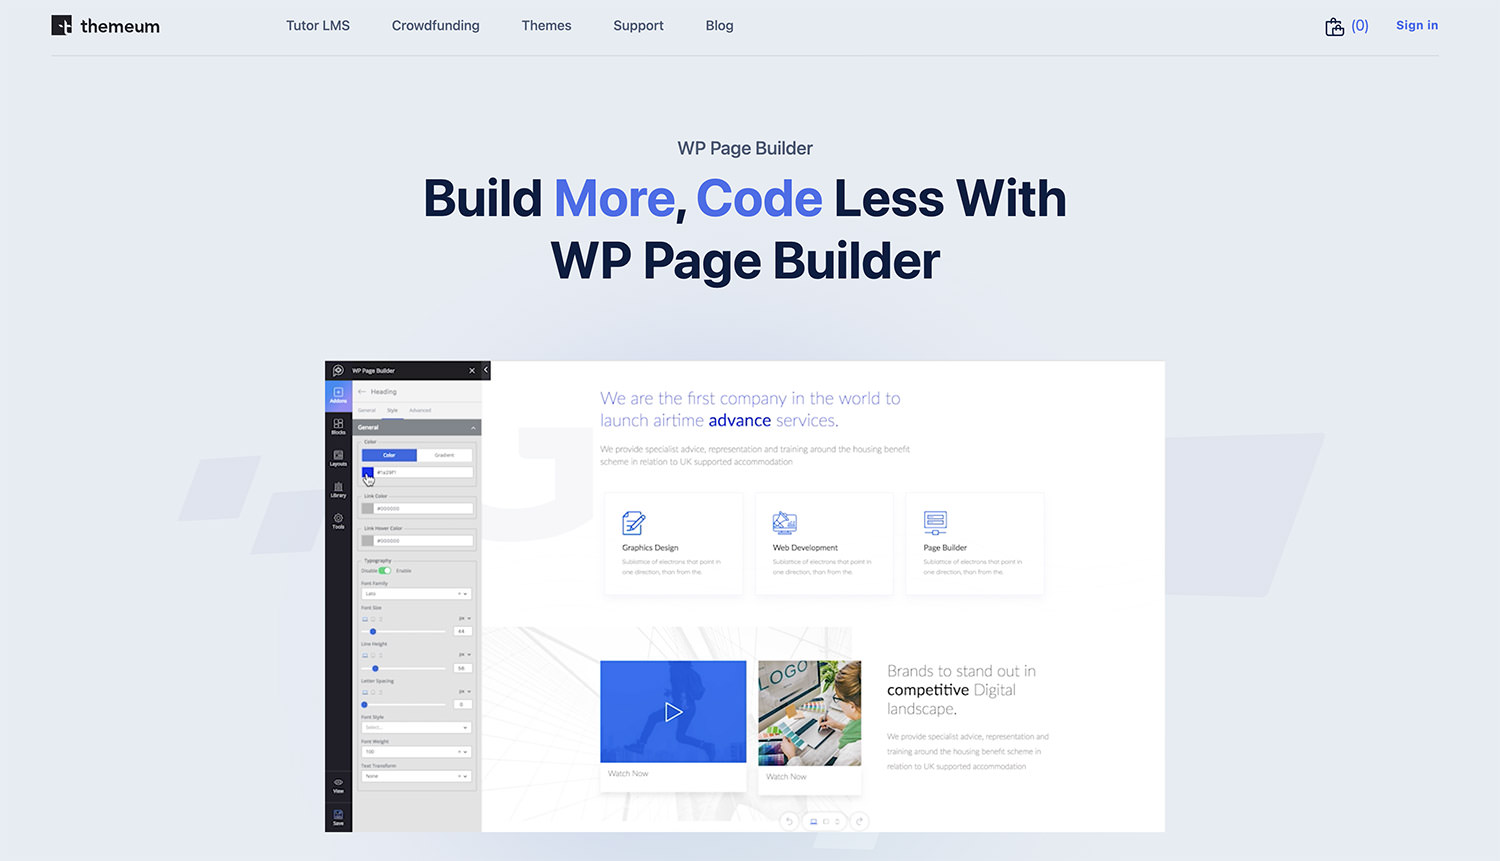 WP Page Builder platform